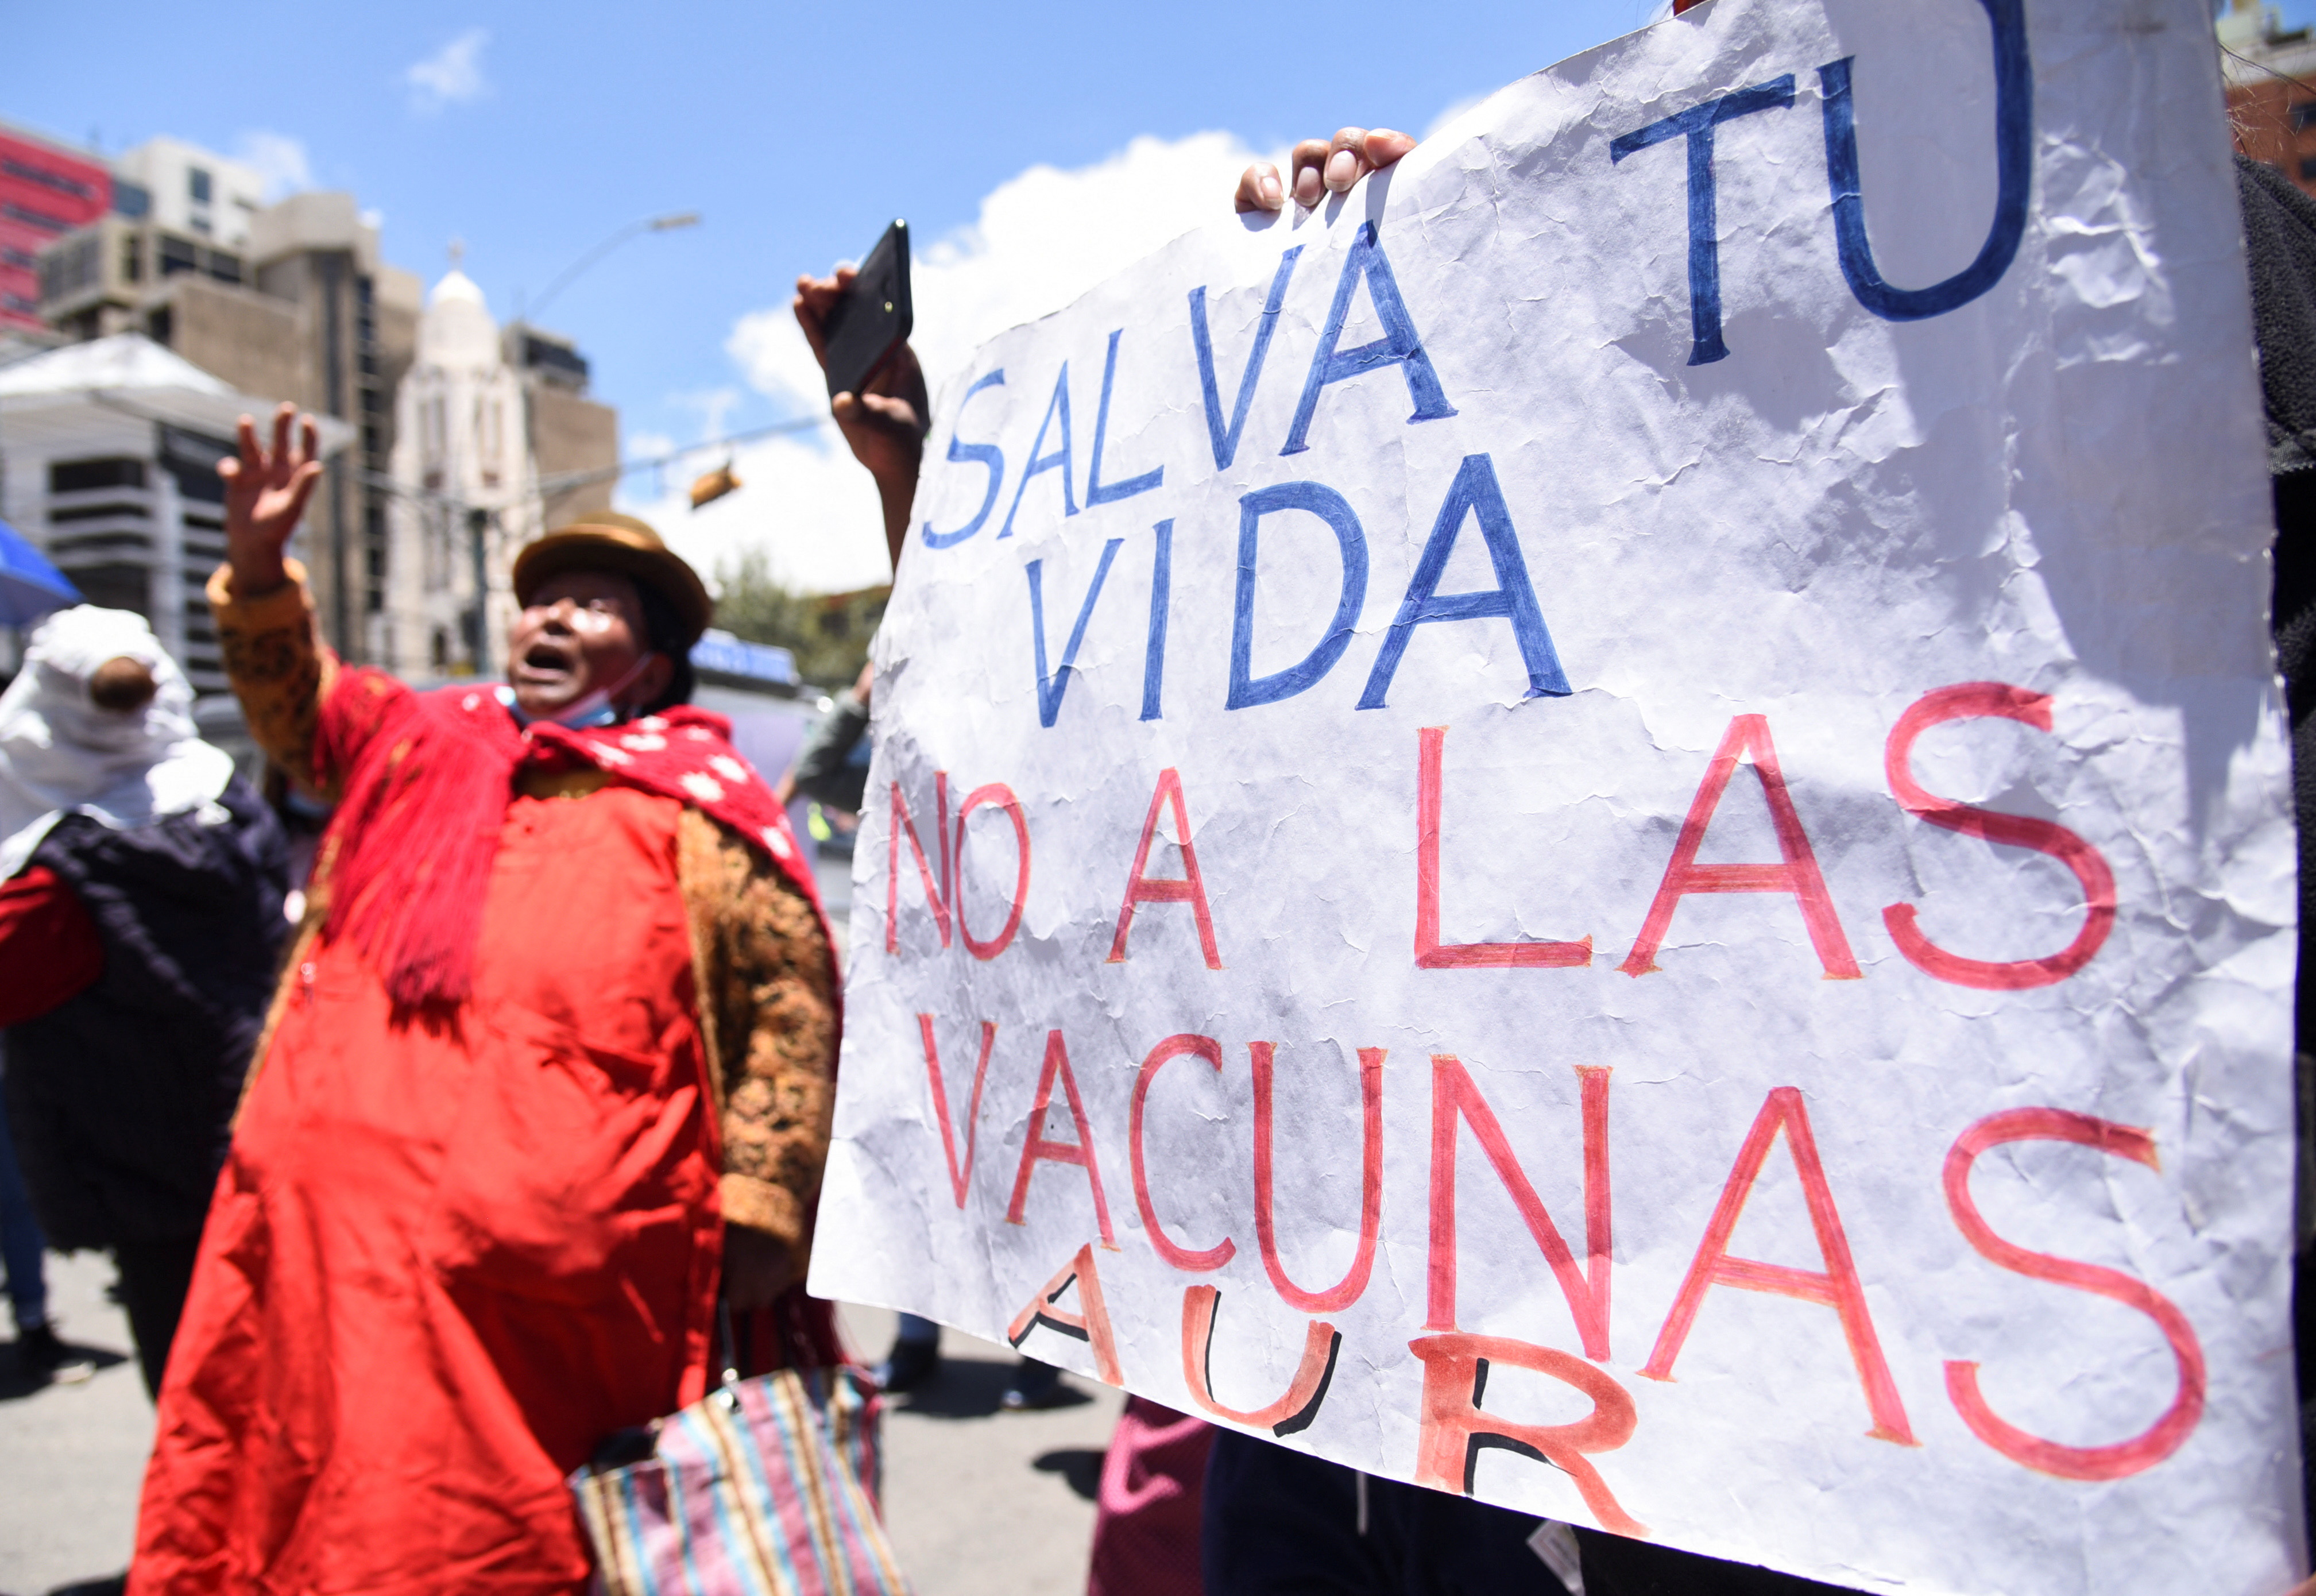 Distintos grupos de personas que se oponen a las vacunas marcharon en las últimas horas en La Paz, Cochabamba y Santa Cruz (REUTERS/Claudia Morales)